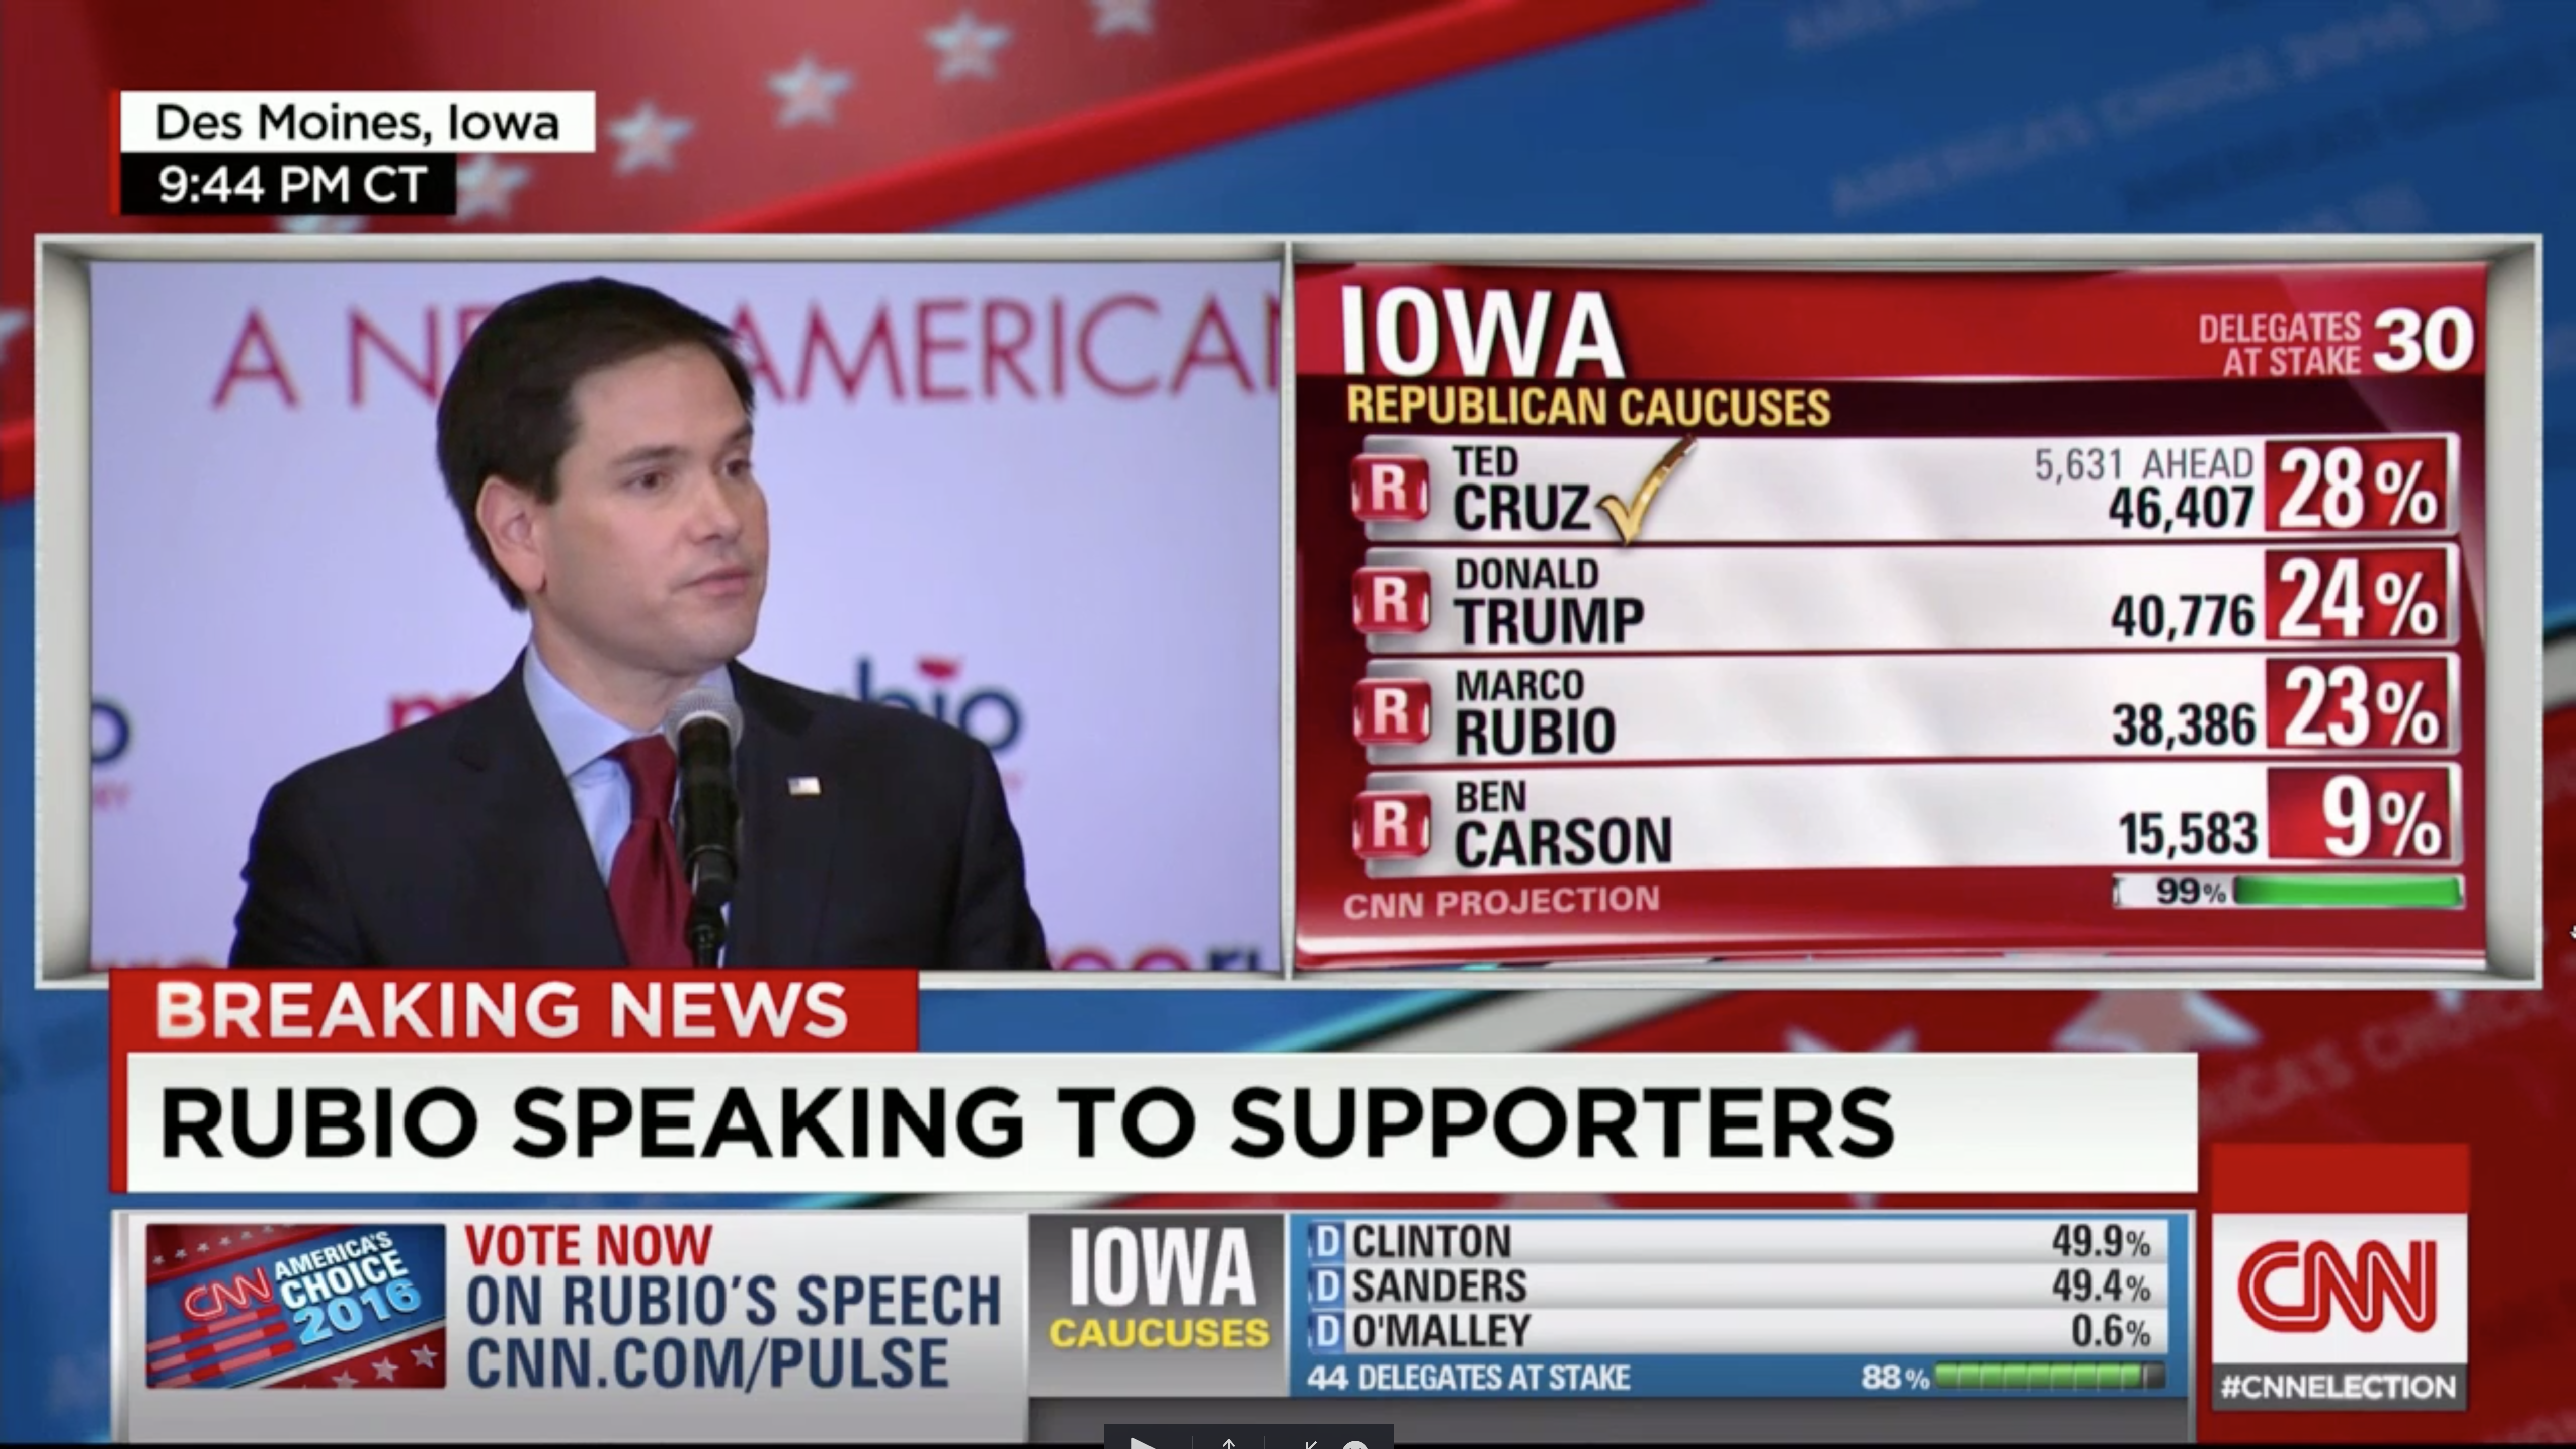 CNN republican returns on Iowa Caucus